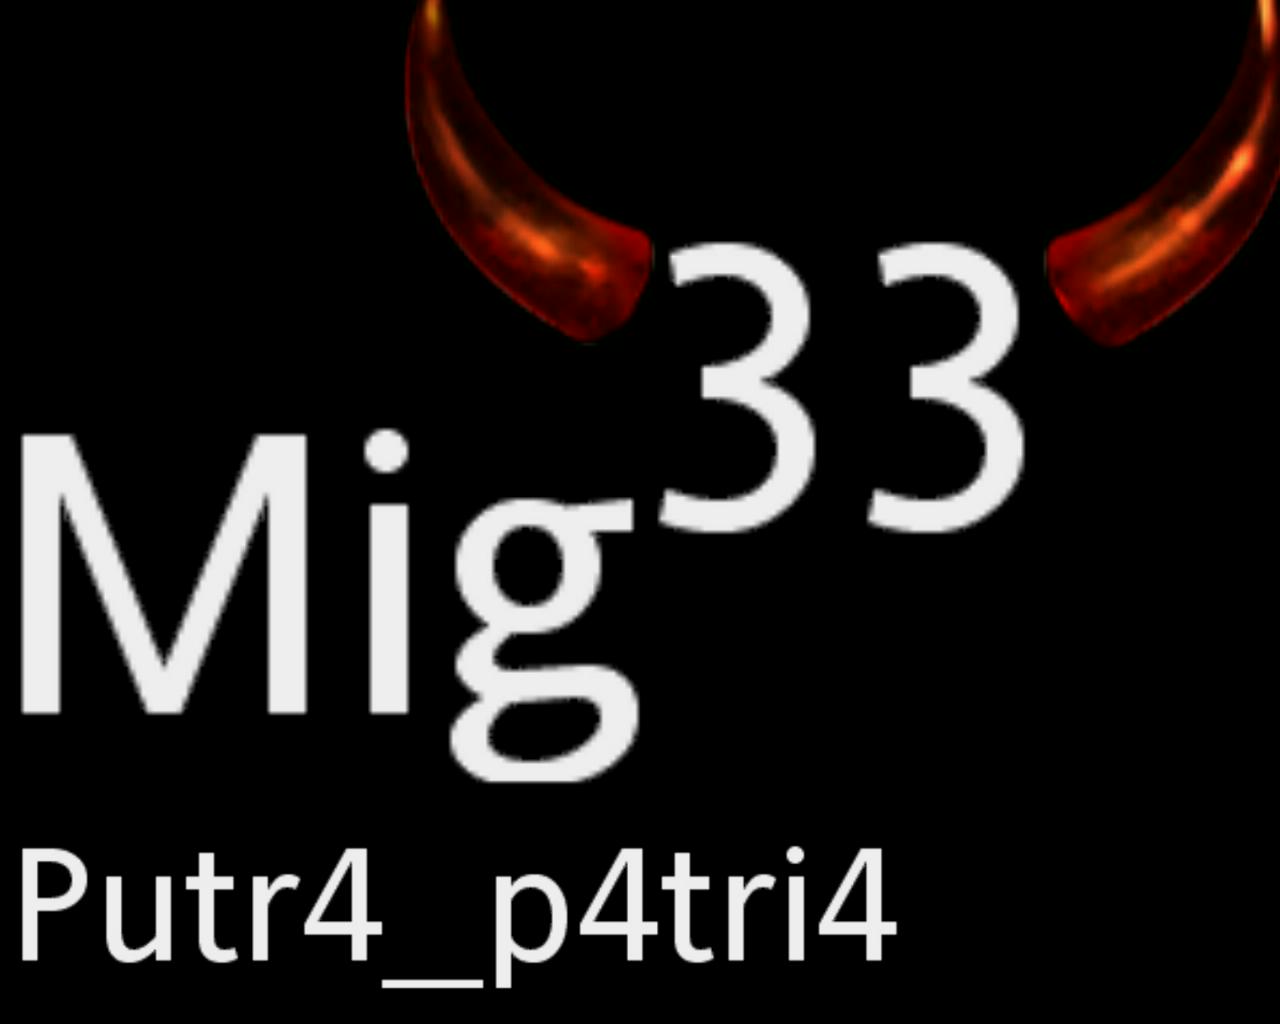 Mig33